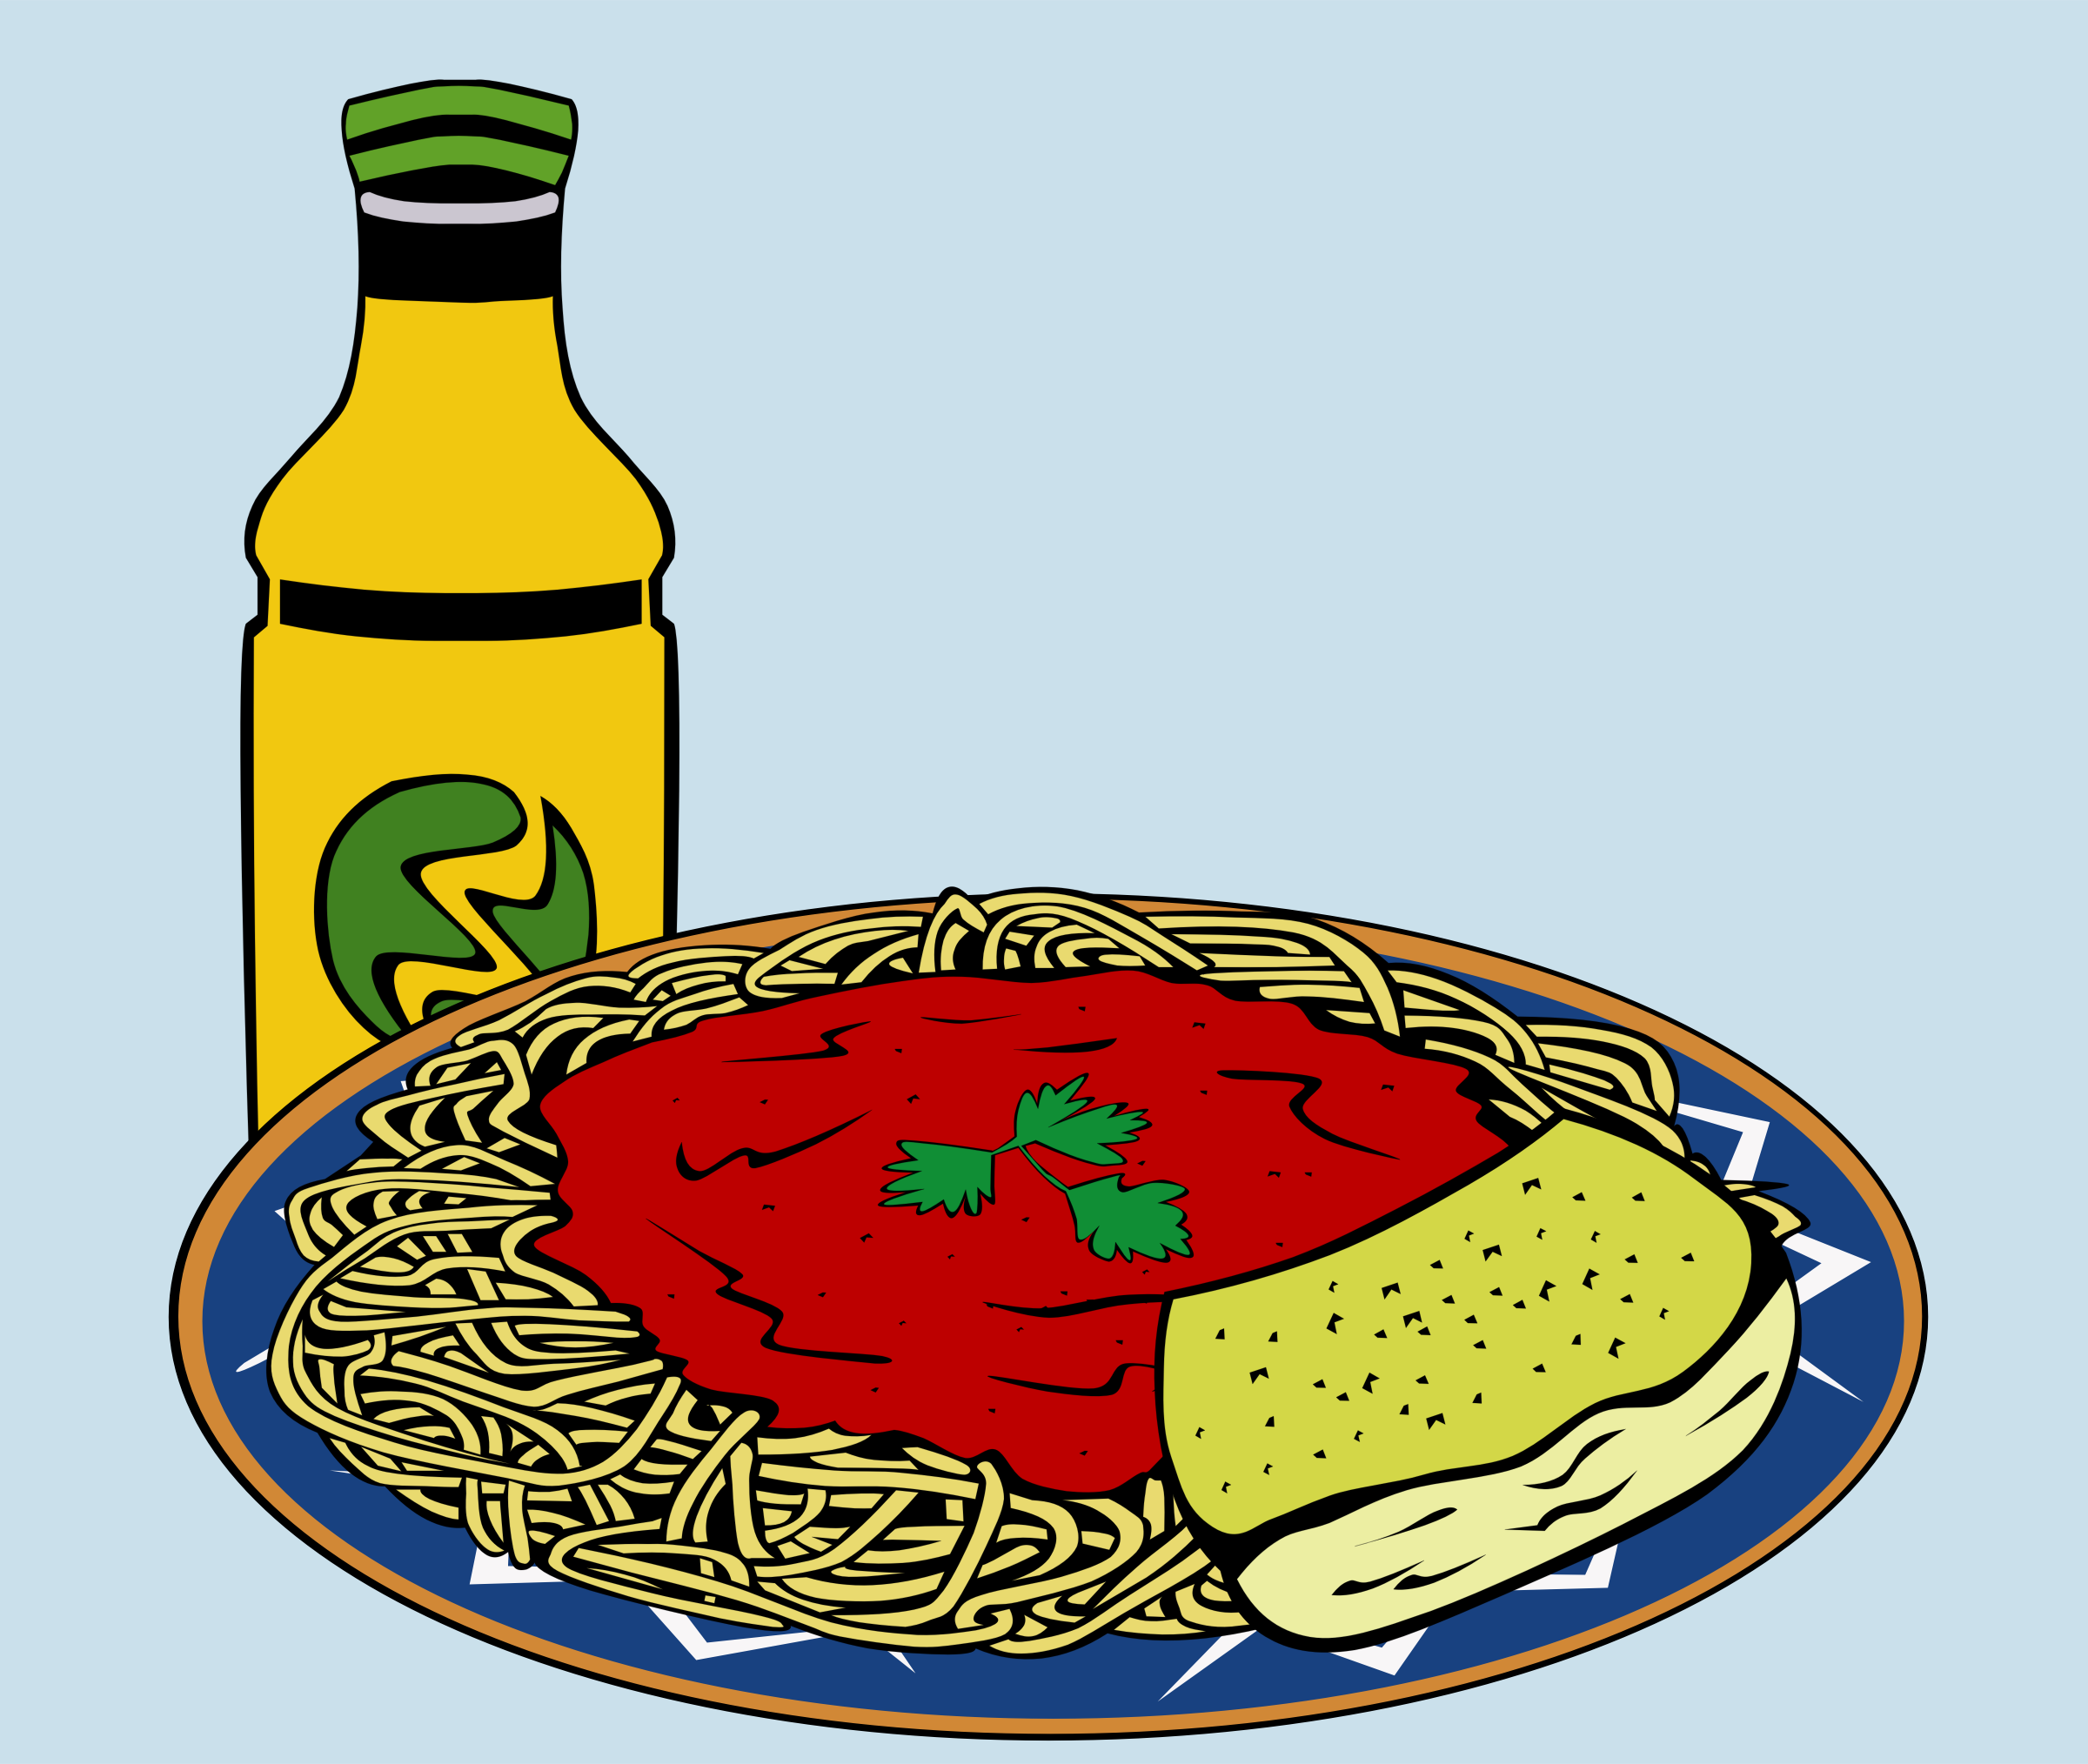 Easy Lunch - Utilizzo Buono Pasto